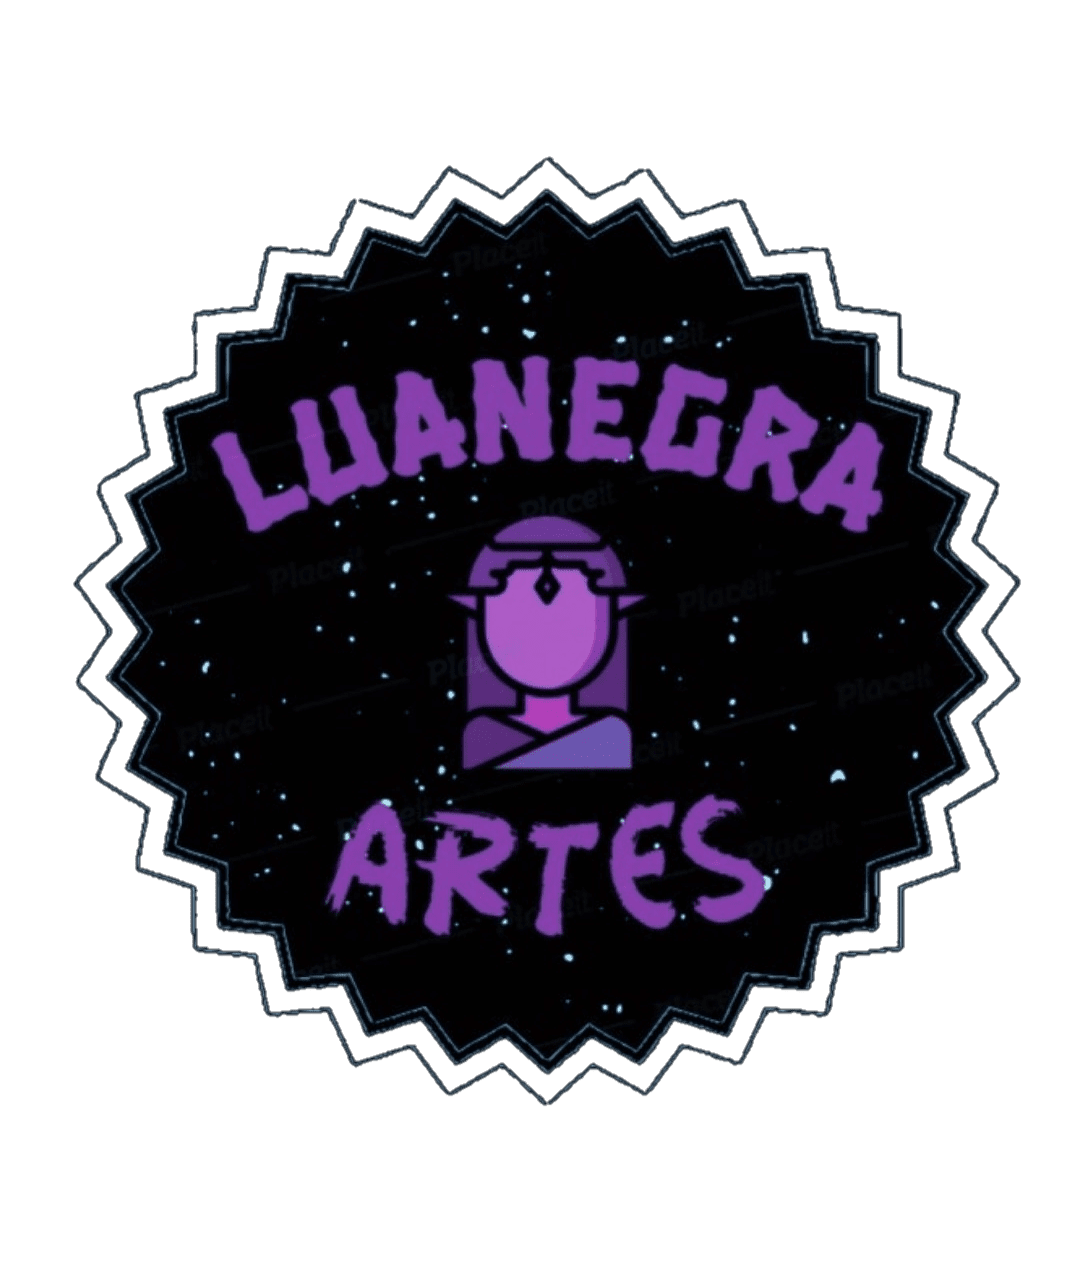 Luanegra Artes